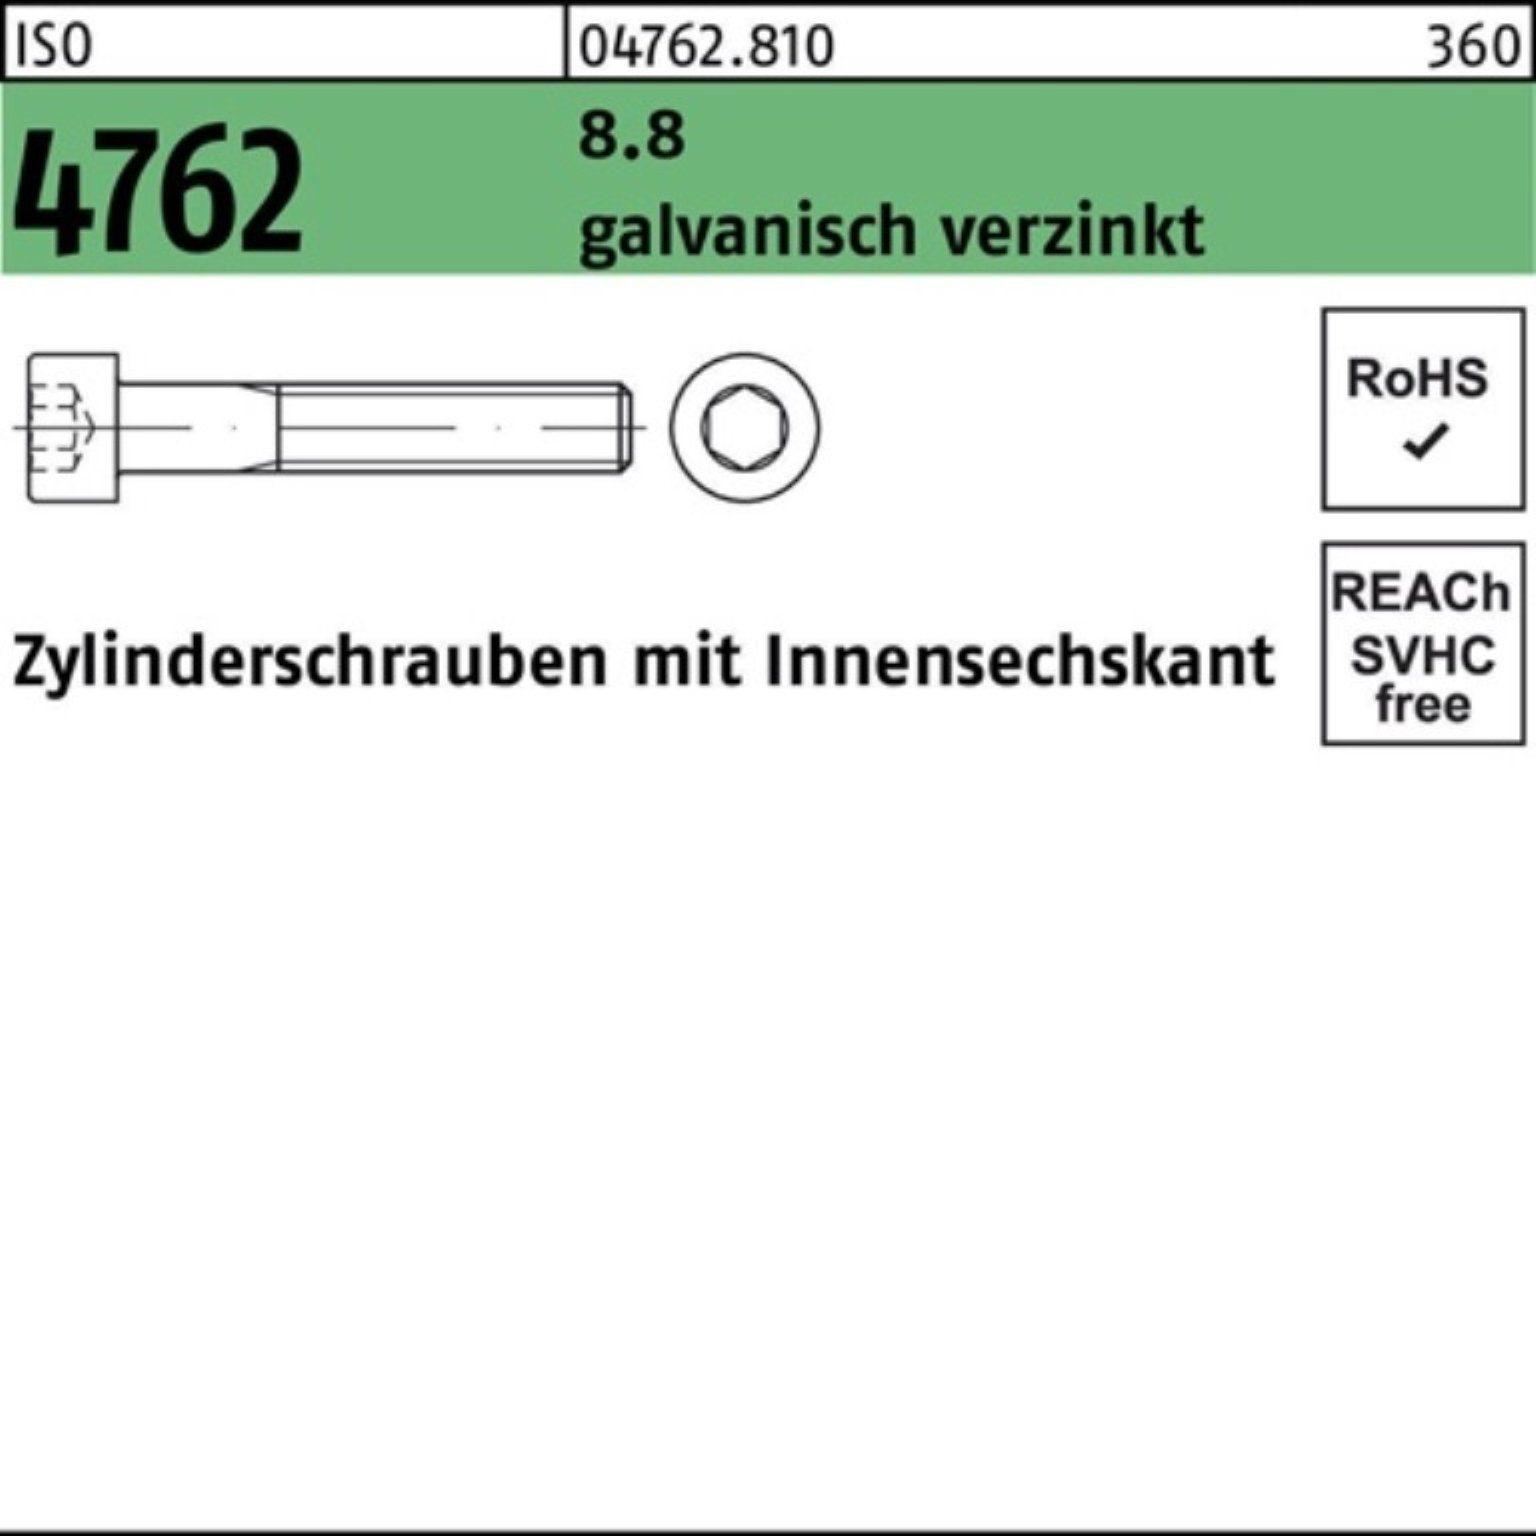 Reyher Zylinderschraube 100er ISO Pack 8.8 galv.verz. Innen-6kt 4762 M30x120 Zylinderschraube